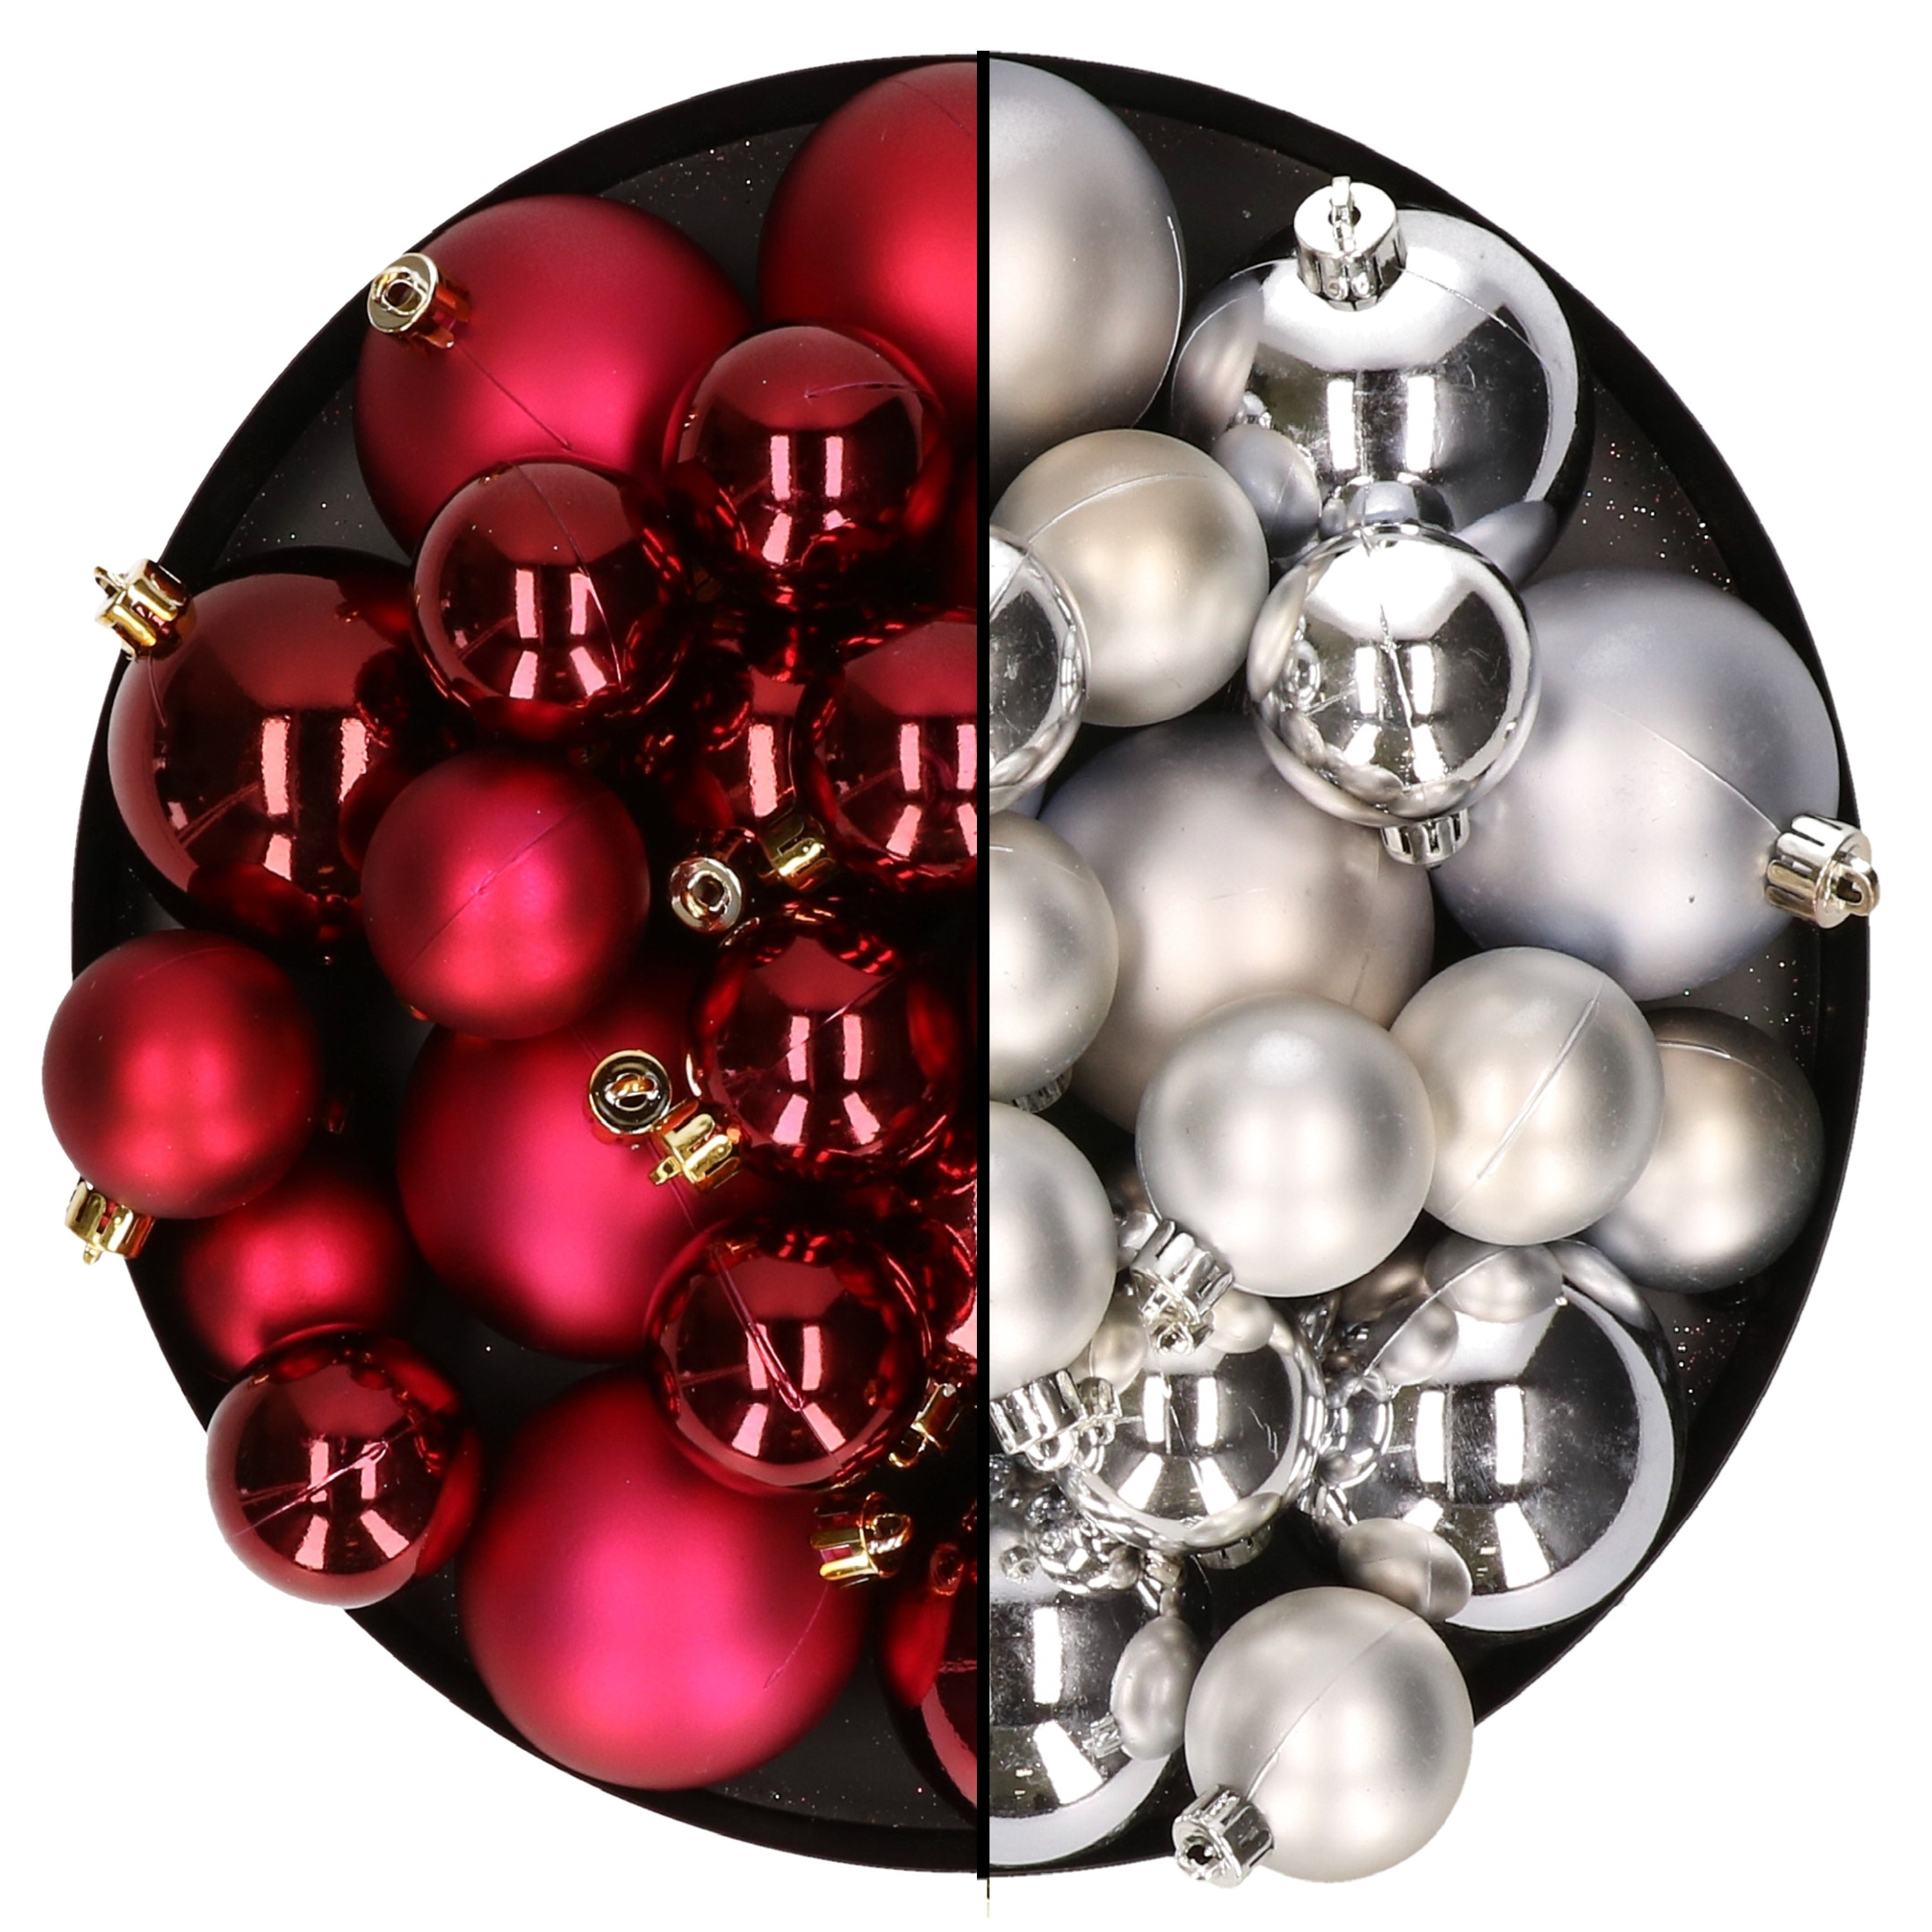 Kerstversiering kunststof kerstballen mix donkerrood-zilver 6-8-10 cm pakket van 44x stuks